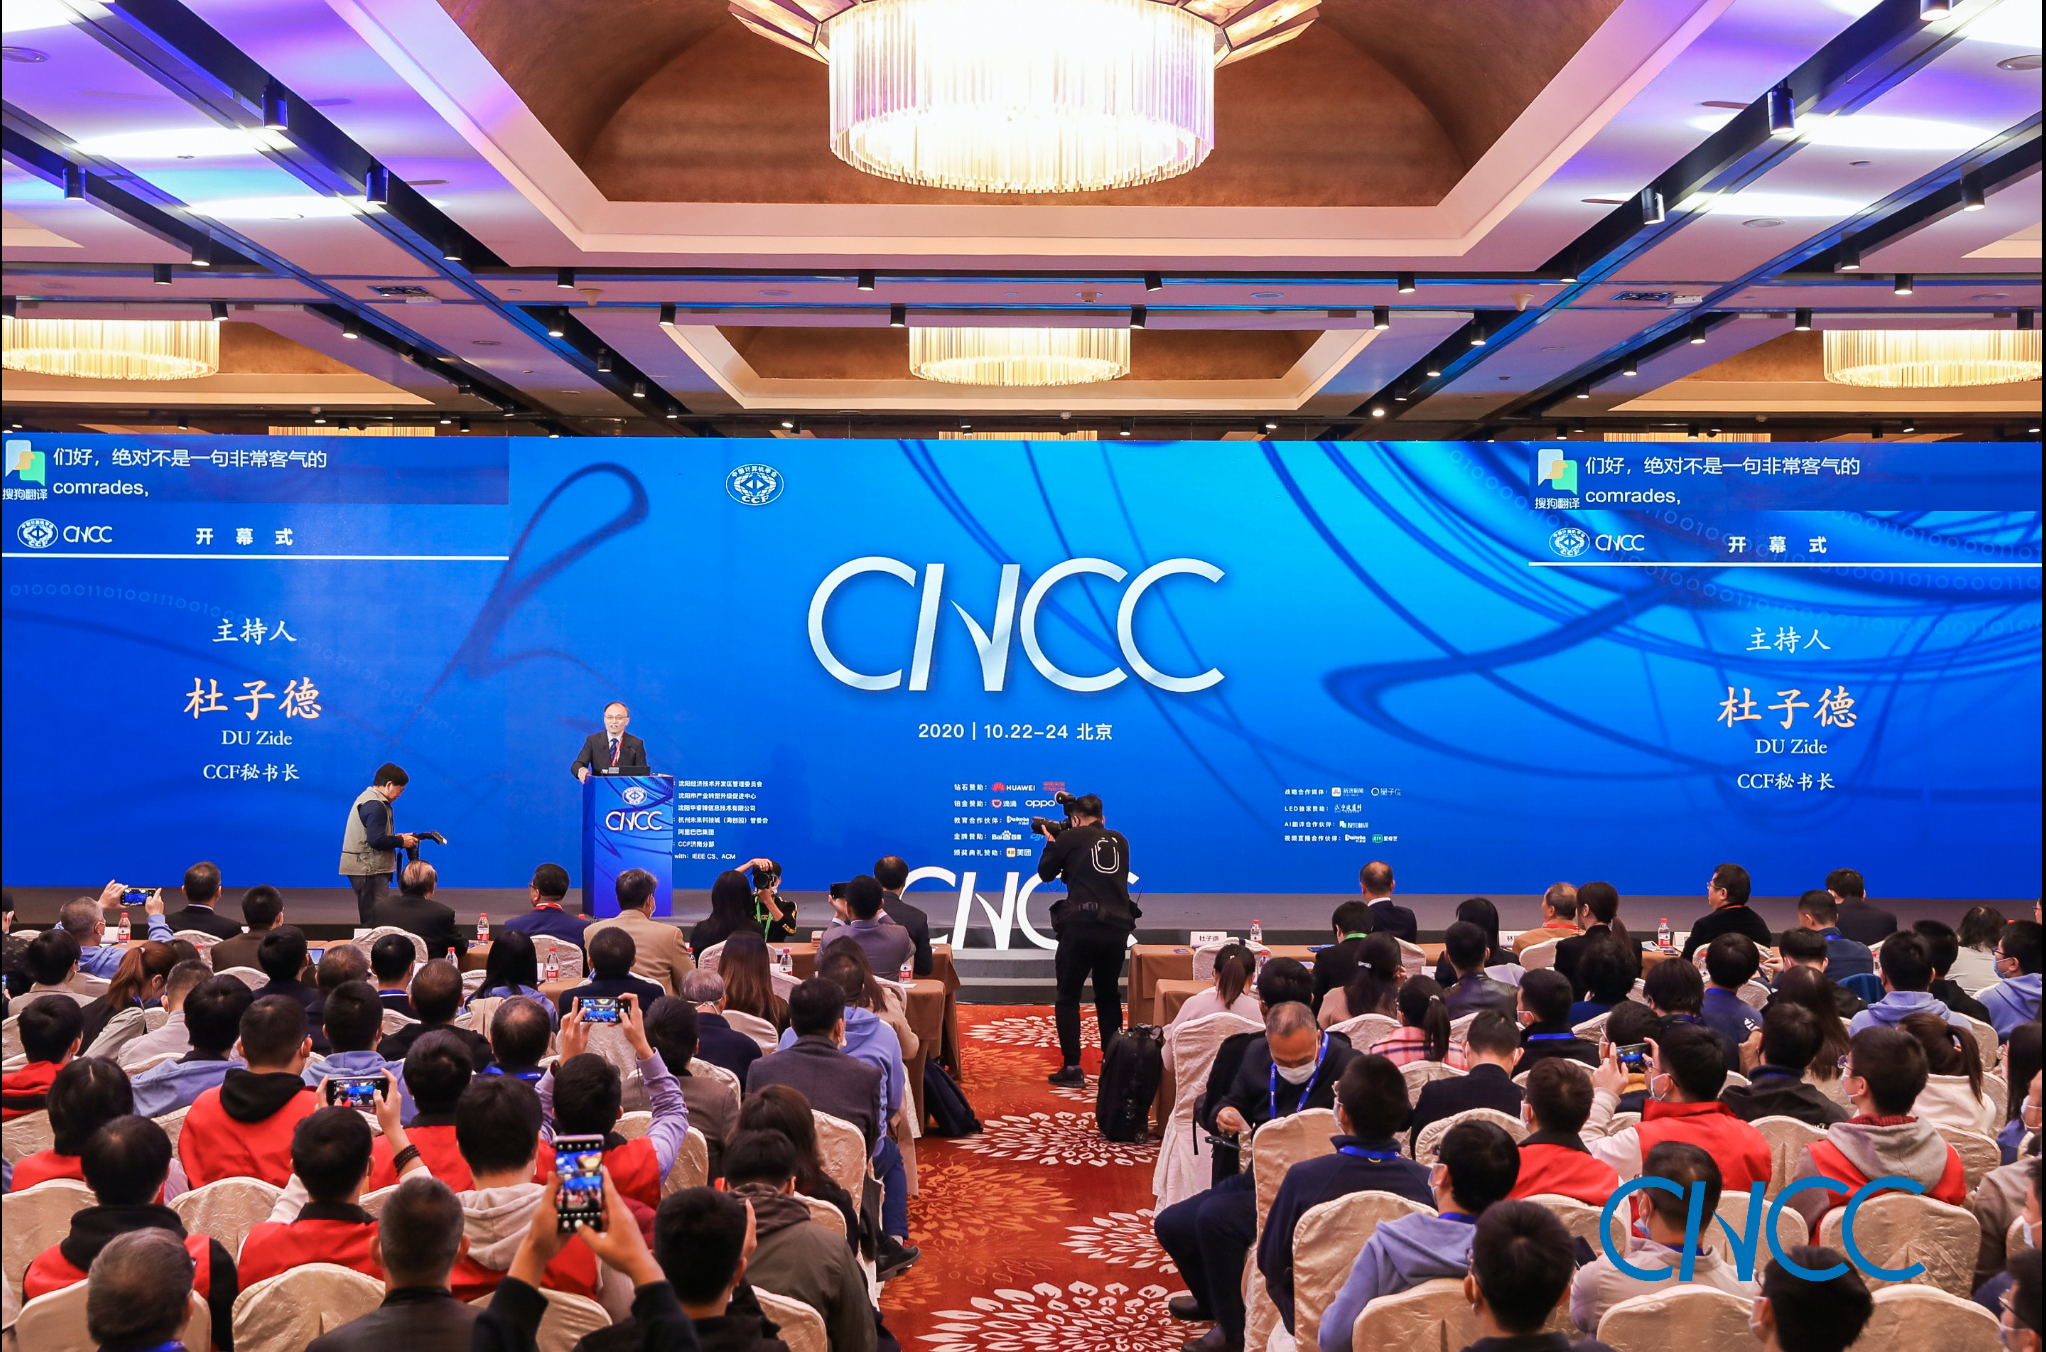 开课吧成为CNCC中国计算机大会唯一教育合作伙伴